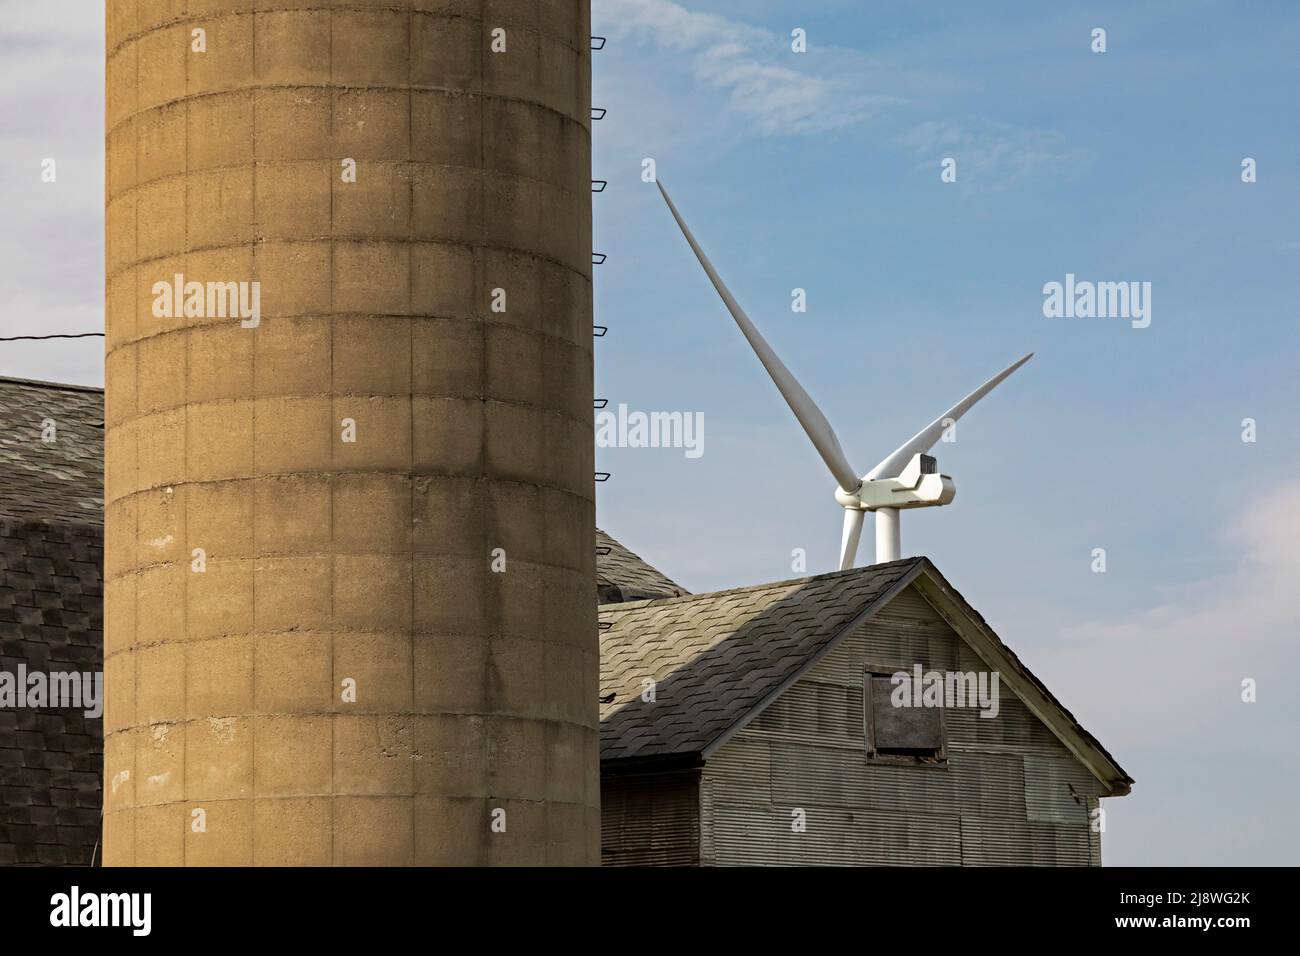 Pigeon, Michigan - Eine Windkraftanlage, Teil des Harvest II Wind Project, in der Nähe einer Scheune im Daumen von Michigan. Stockfoto